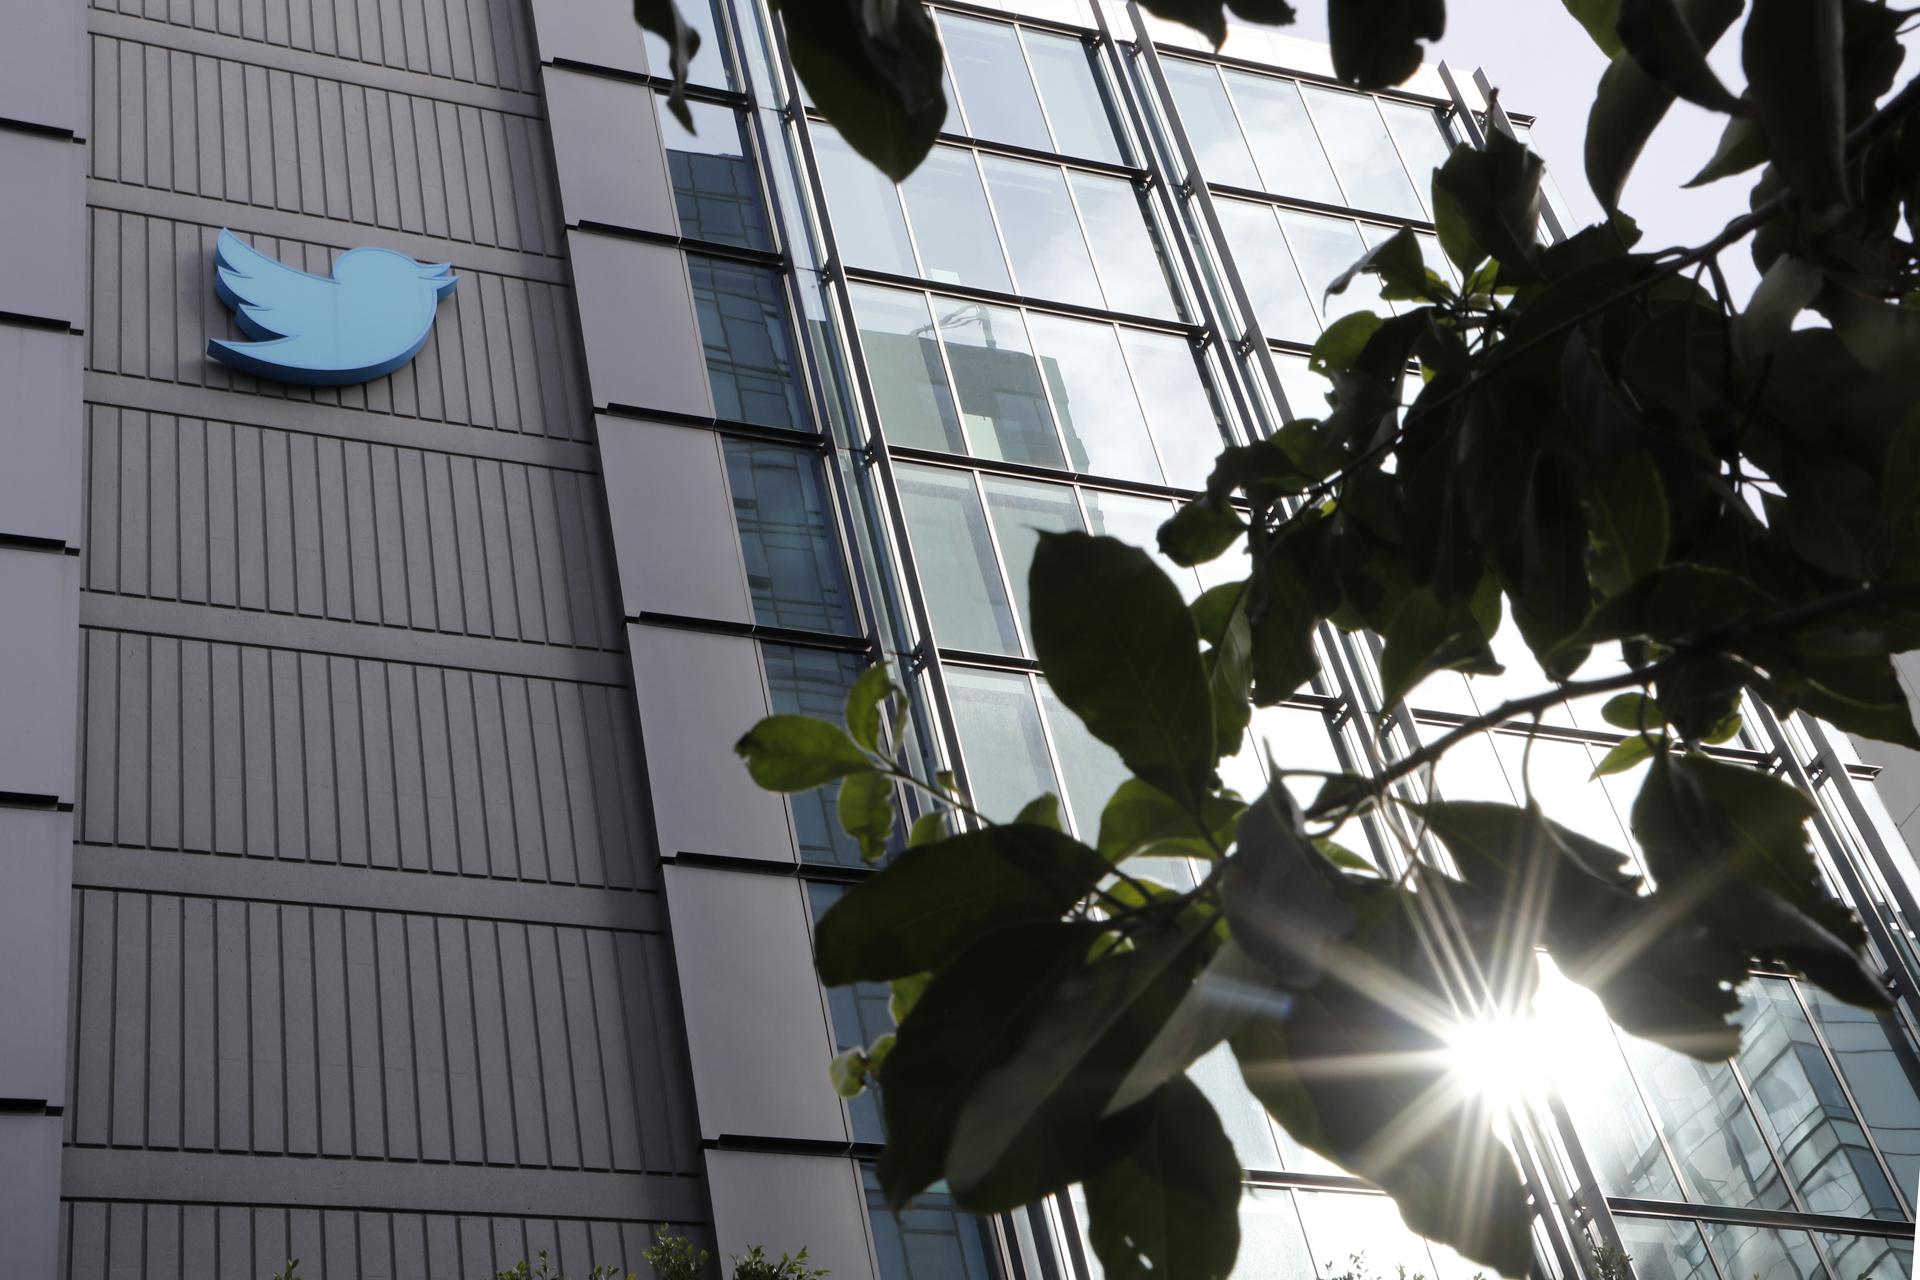 Twitter va a empezar a cobrar a los desarrolladores por acceder a su API